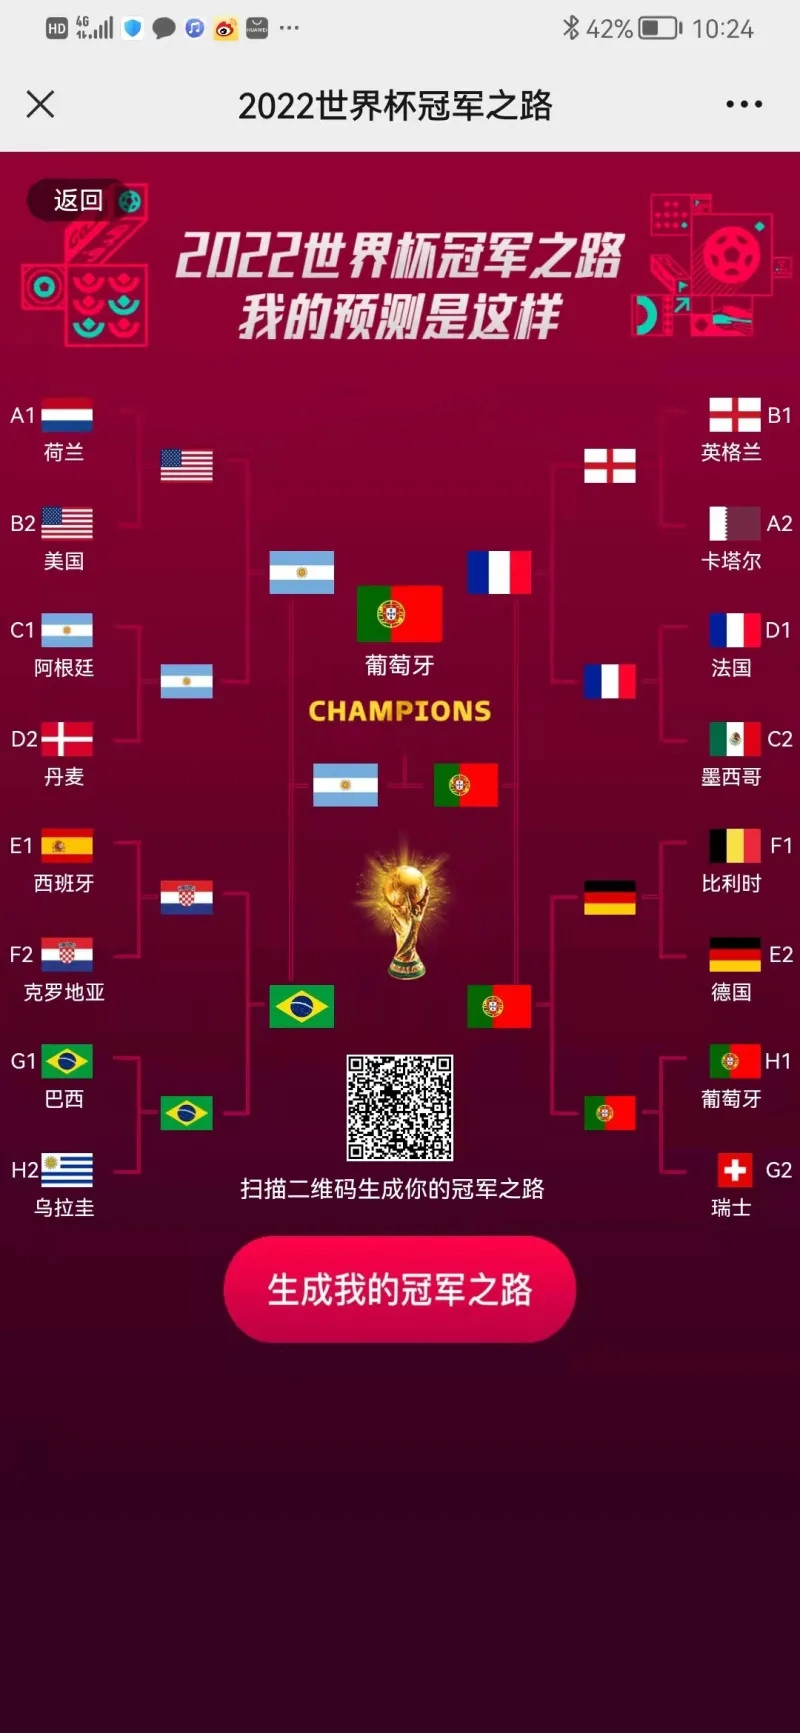 寰宇世界杯FIFA官网买球杯预测 阿根廷vs澳大利亚(图1)